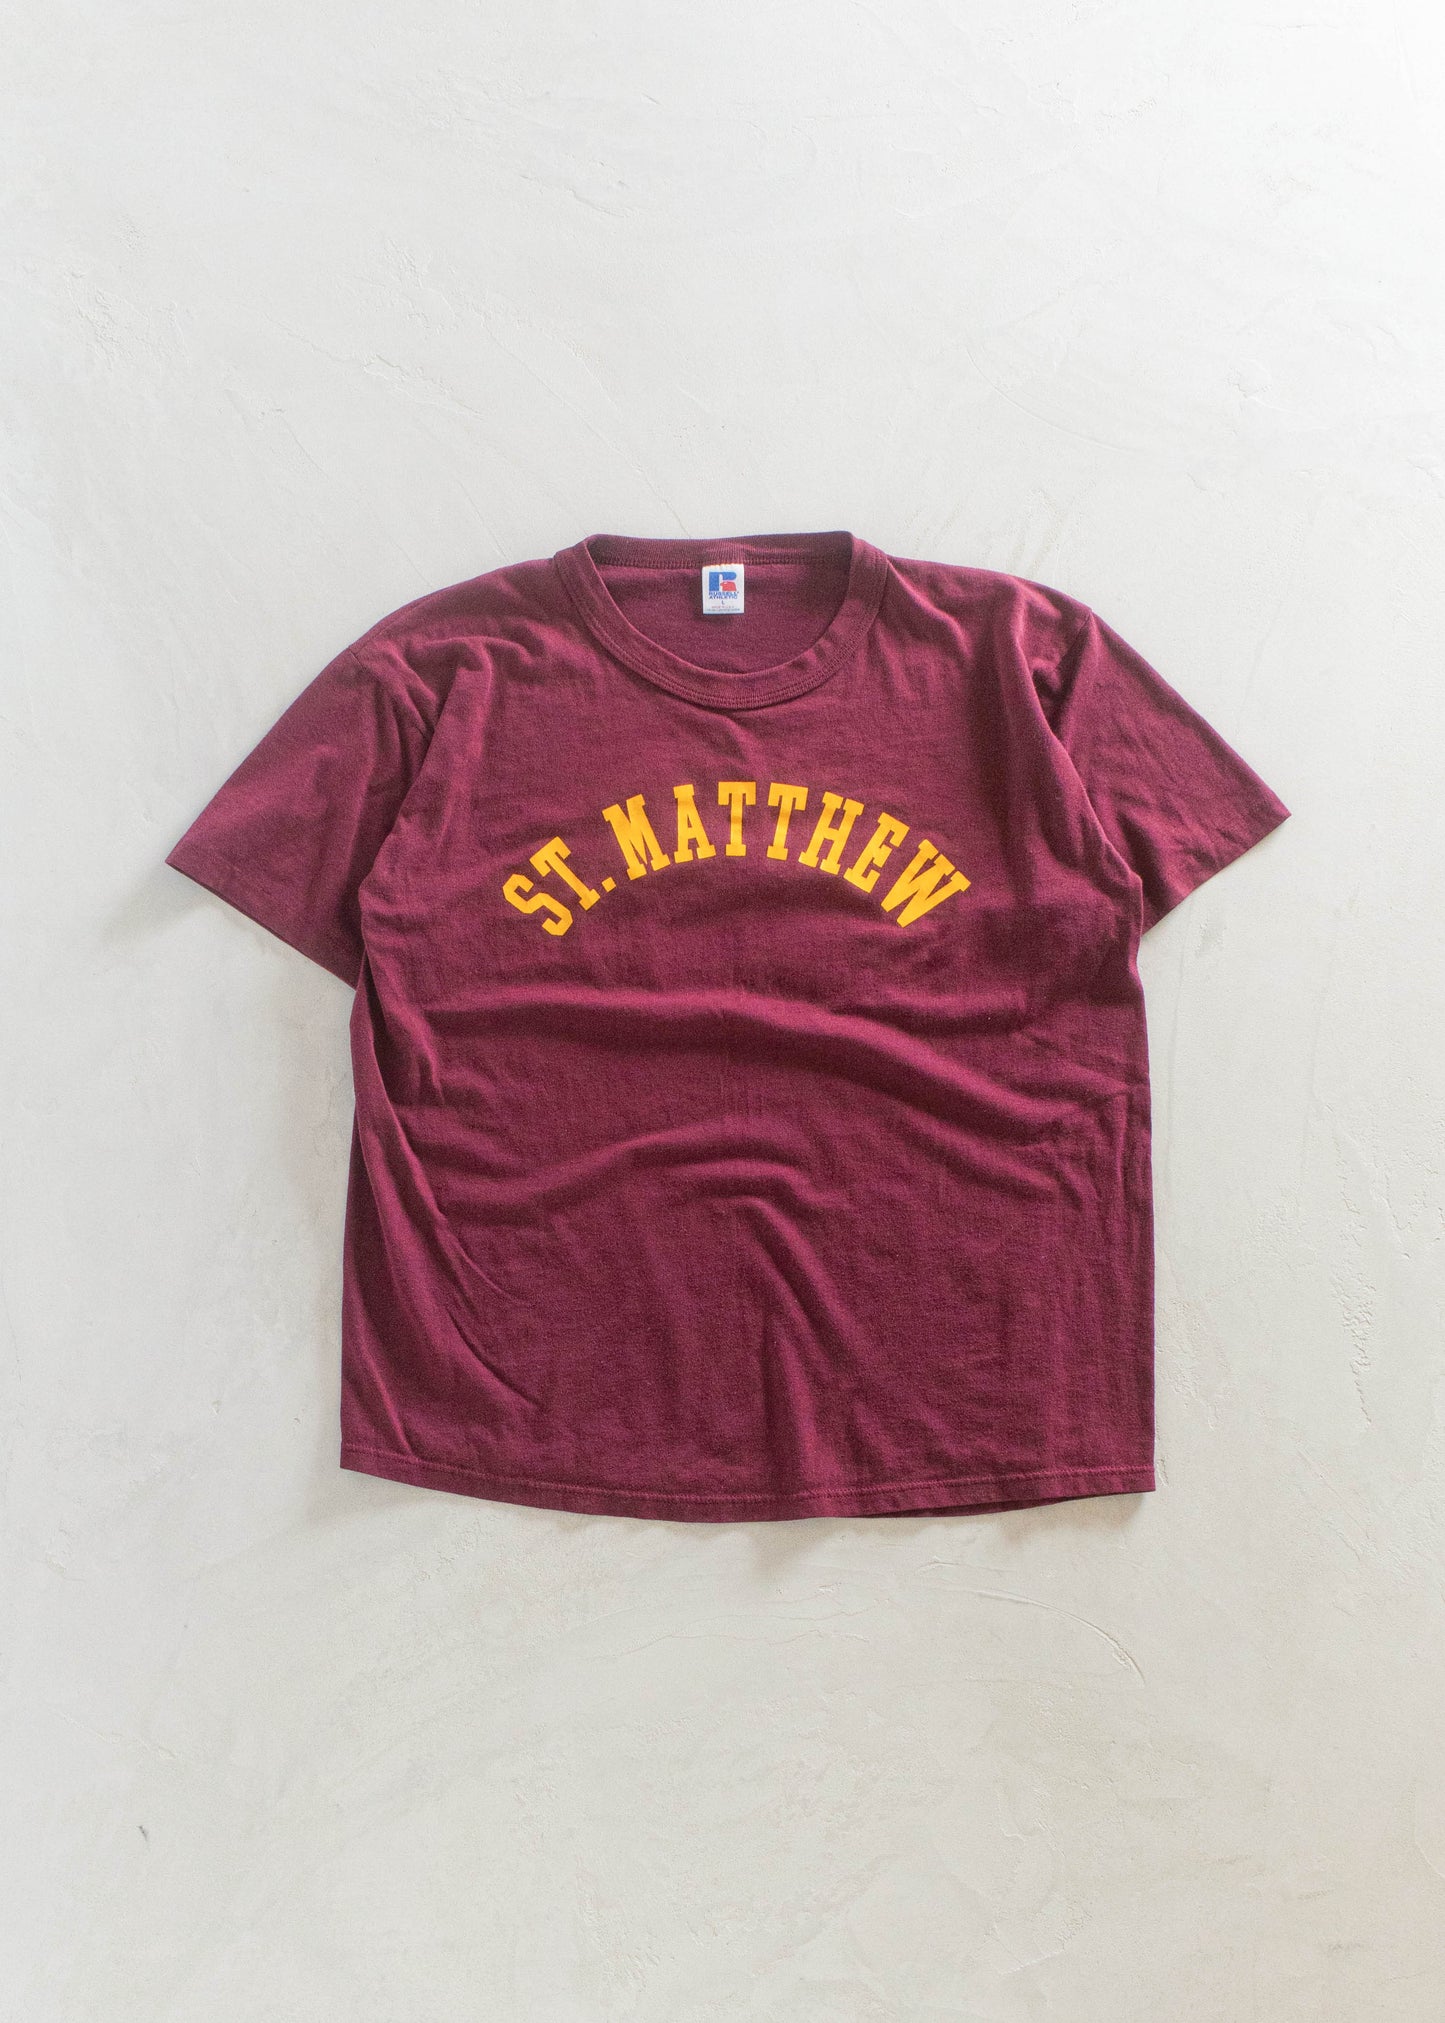 1980s Russel Athletic St-Matthew Souvenir T-Shirt Size M/L